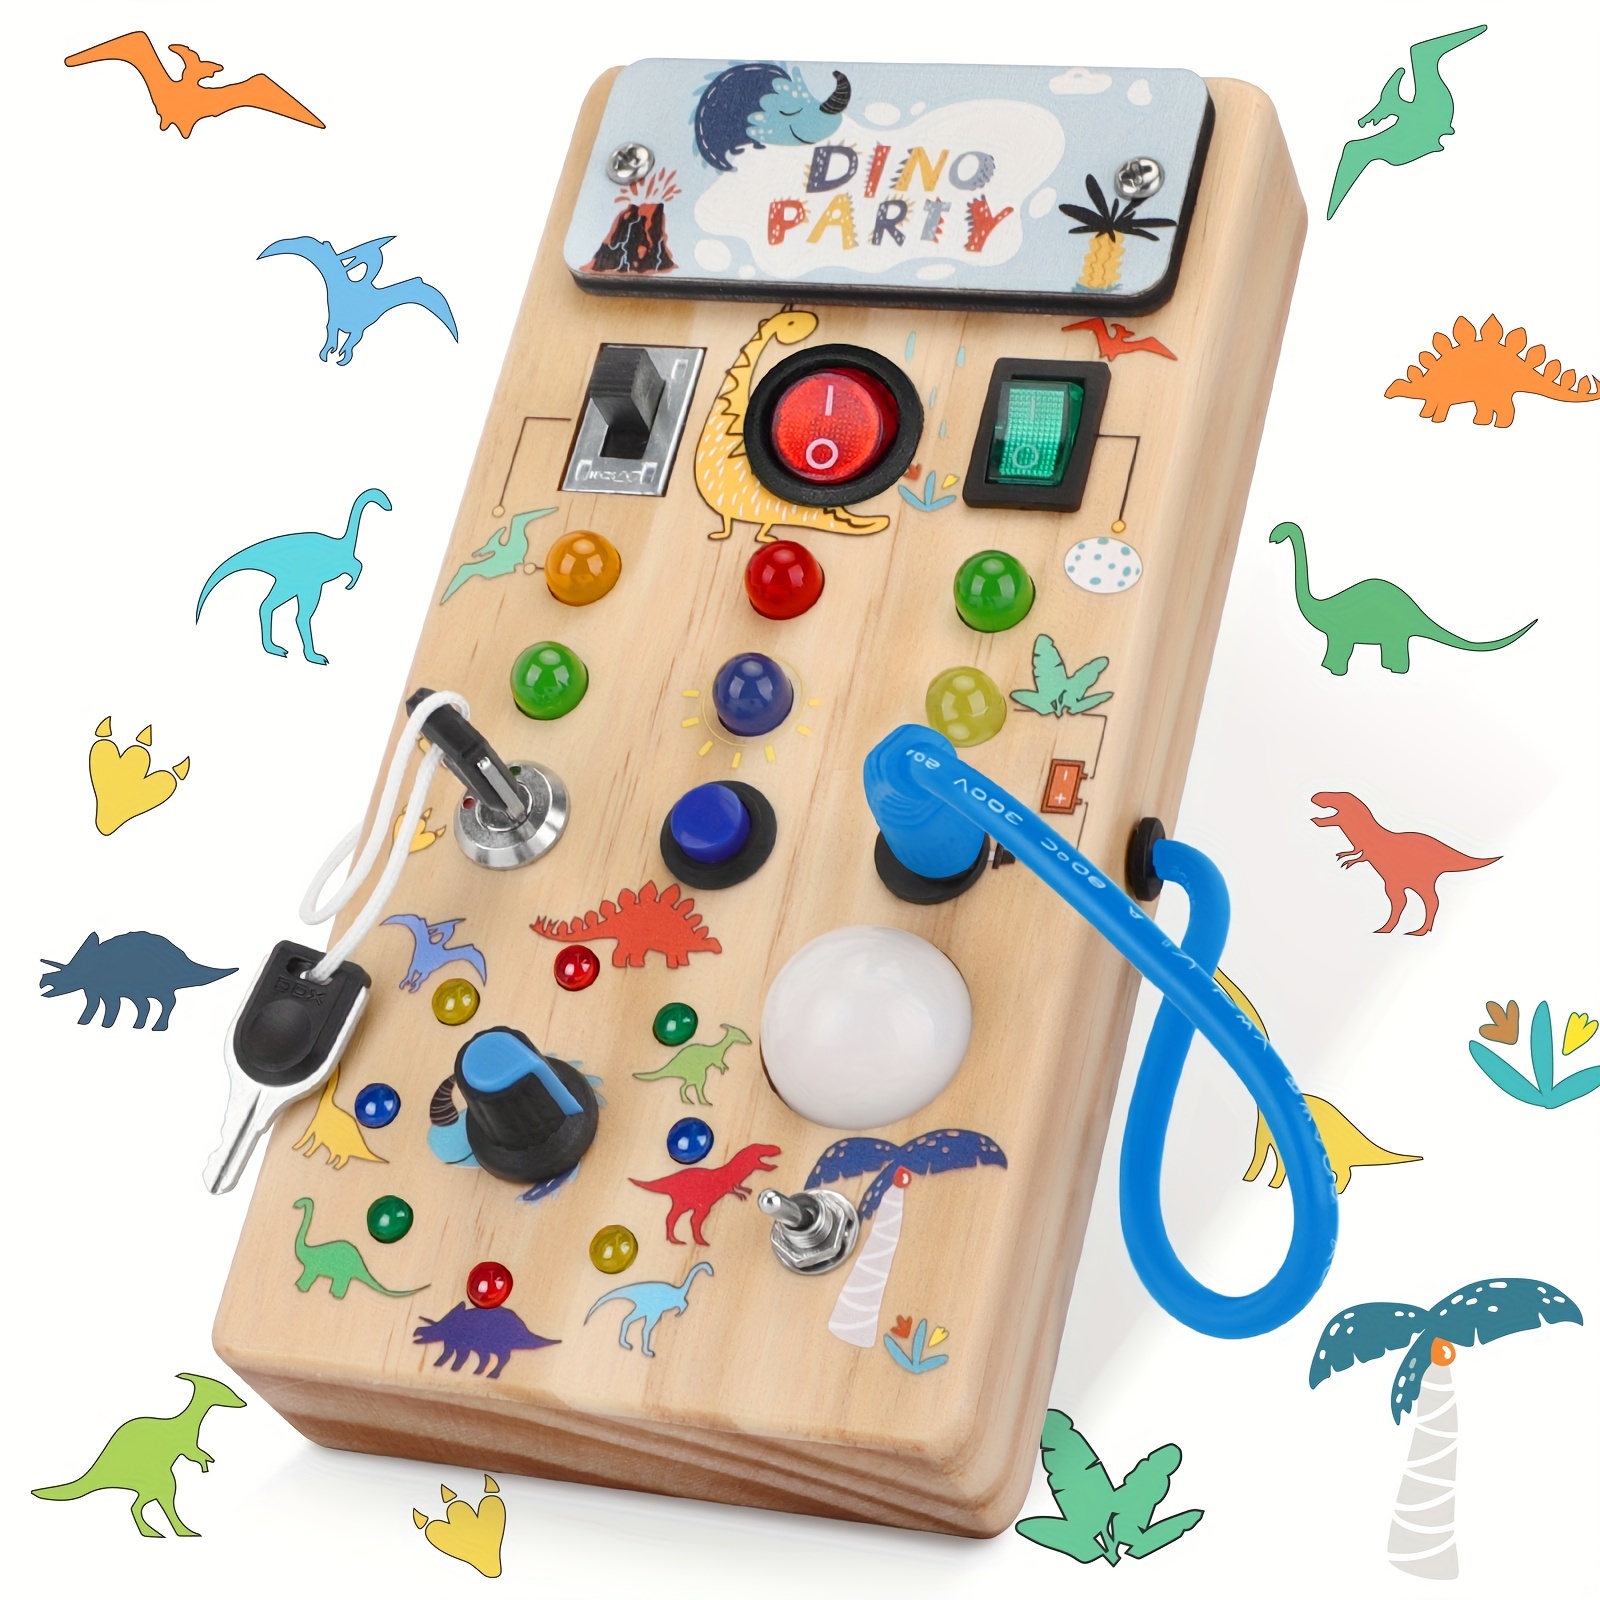  Juguetes sensoriales para niños pequeños: juguetes